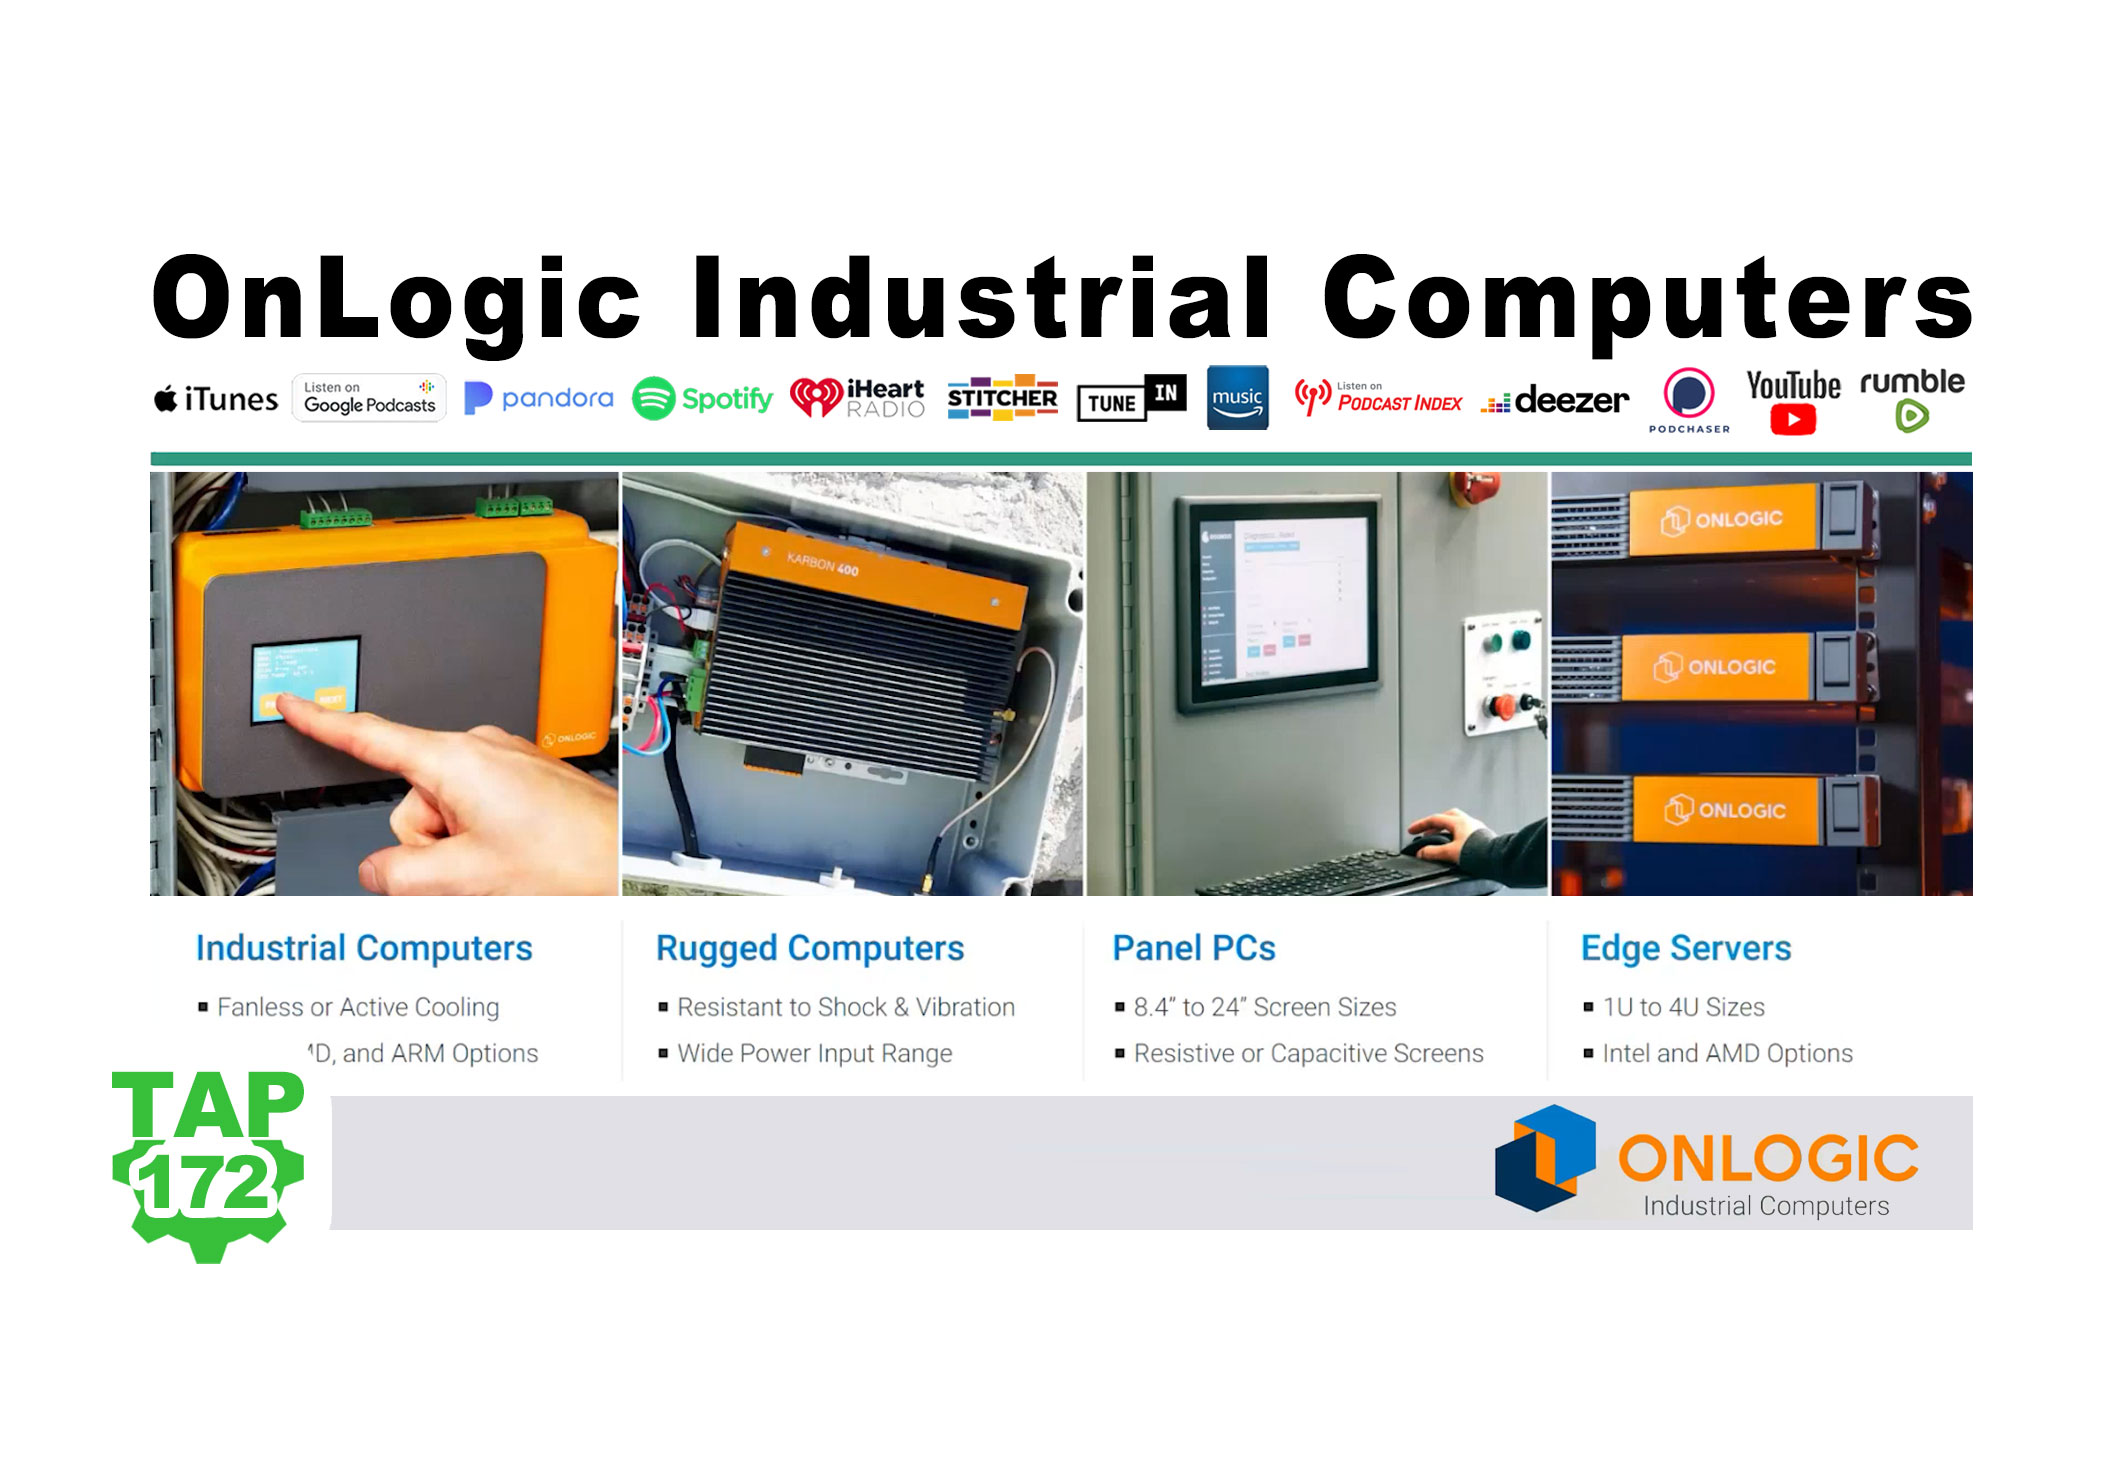 OnLogic Industrial Computers (P172)